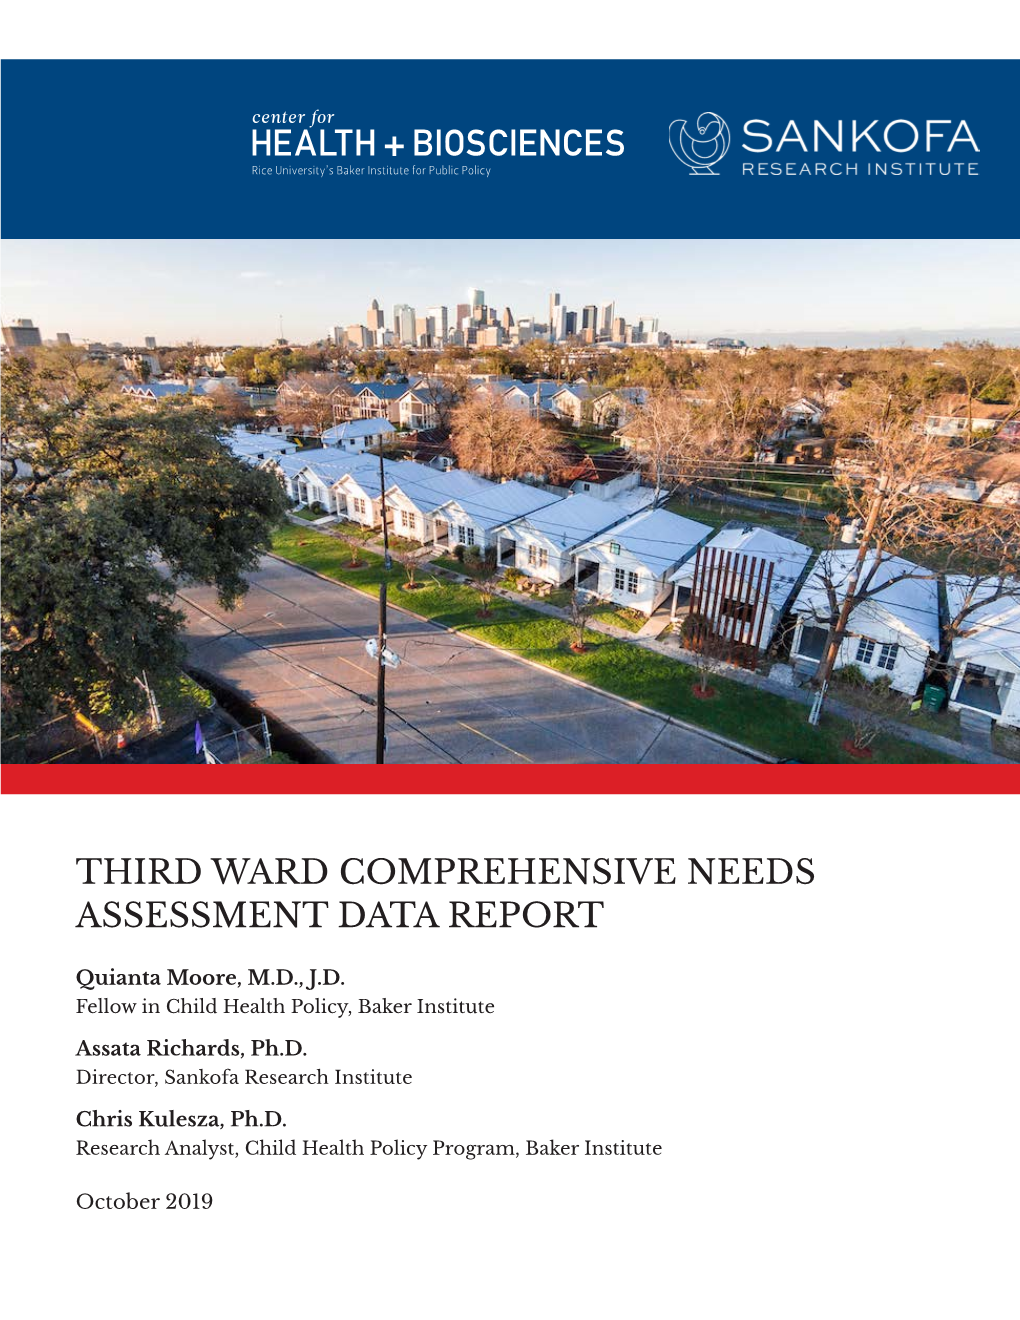 Third Ward Comprehensive Needs Assessment Data Report